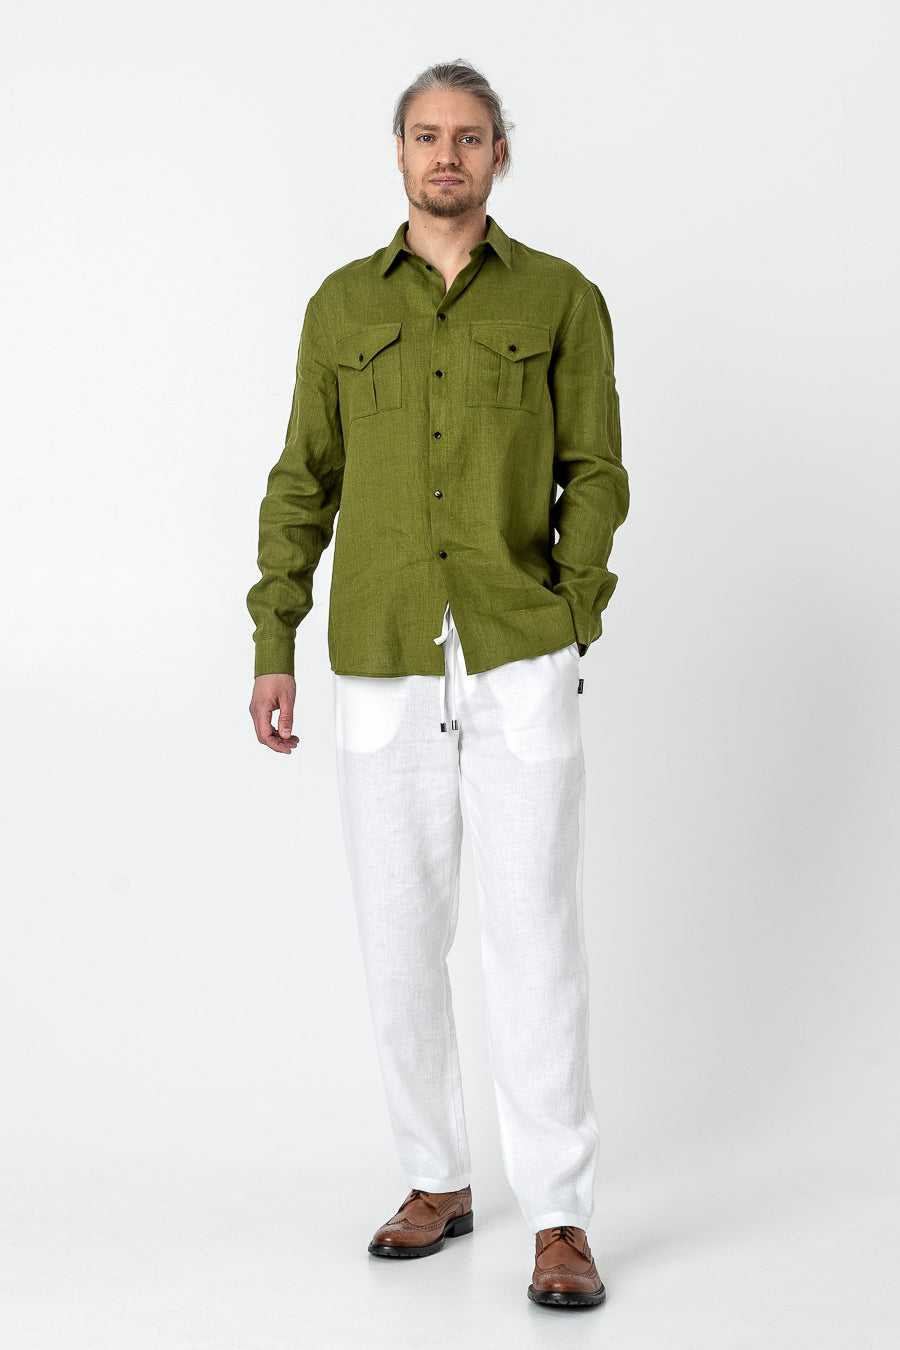 KAITO | Long sleeve linen shirt with pockets - Mezzoroni